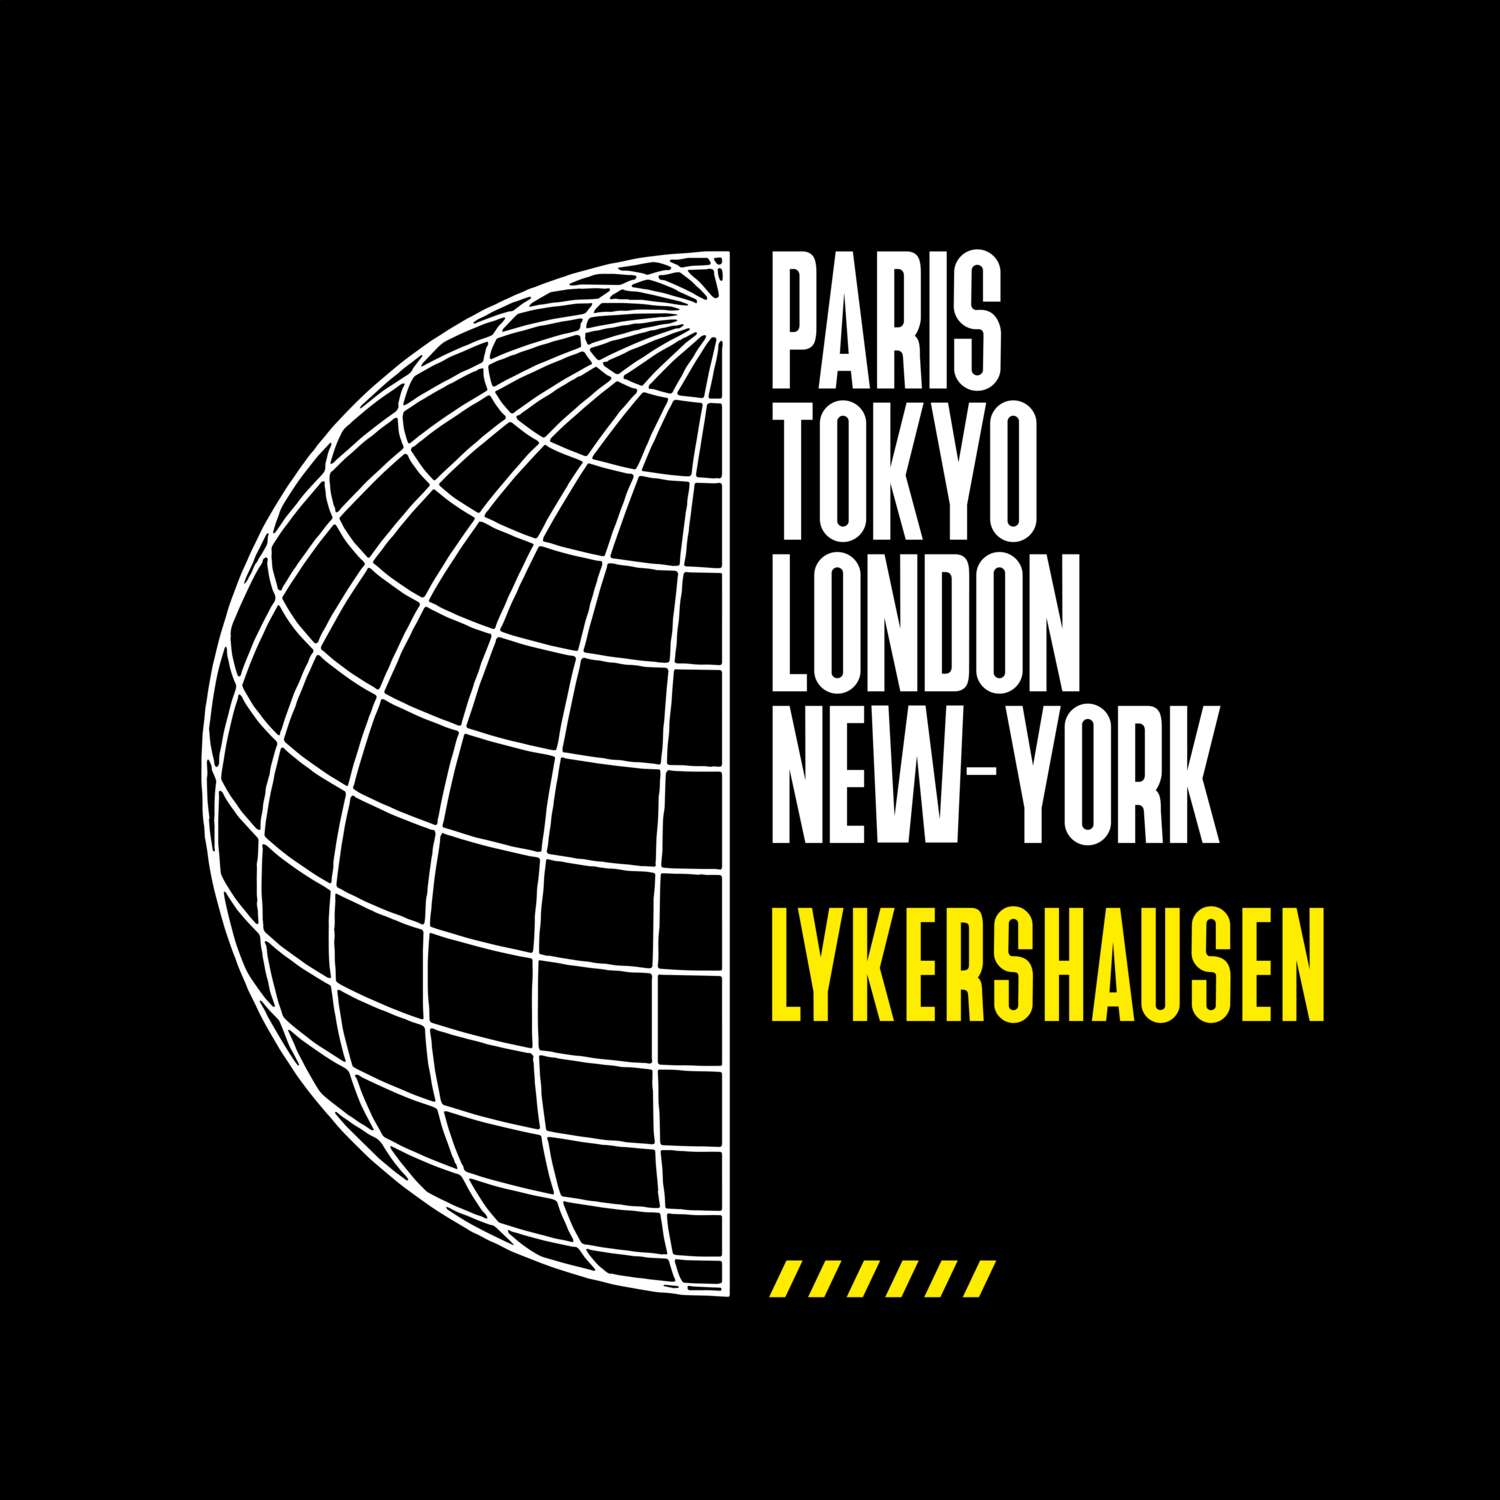 Lykershausen T-Shirt »Paris Tokyo London«